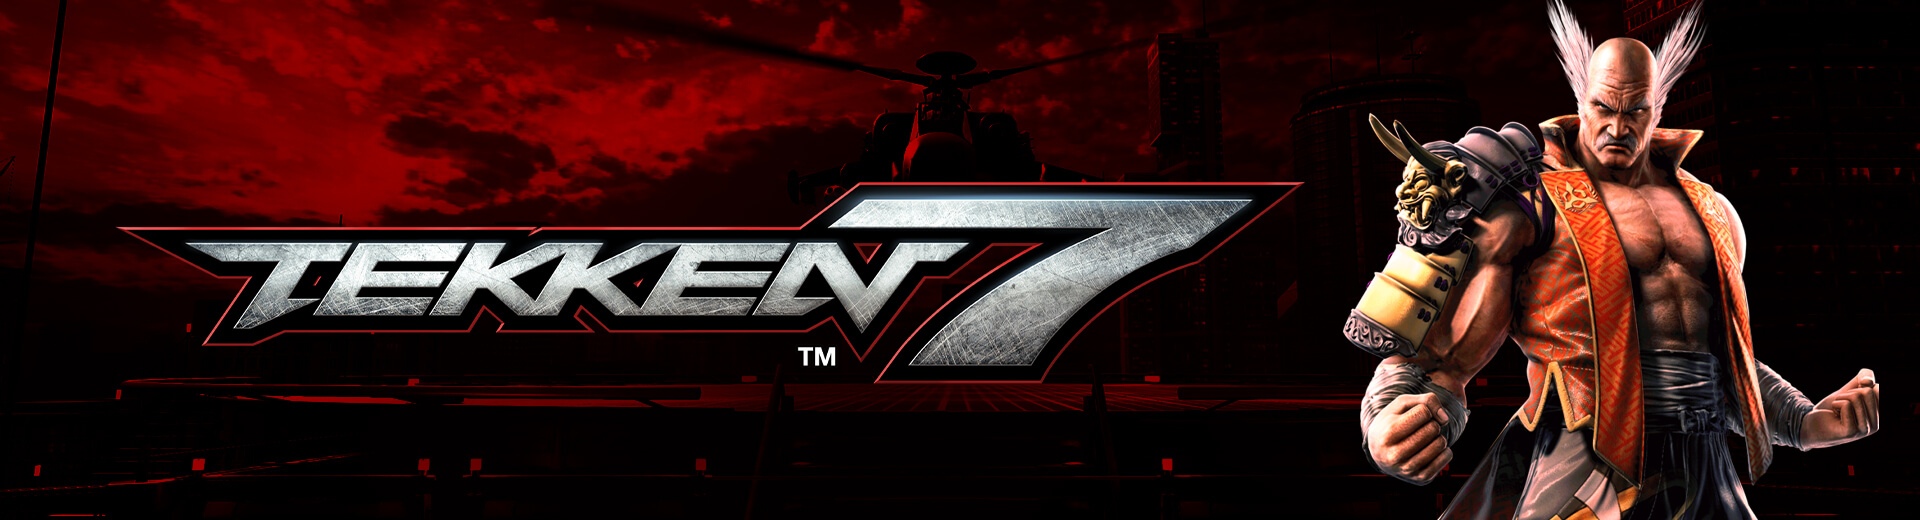 Tekken 7 @ The Cave #4